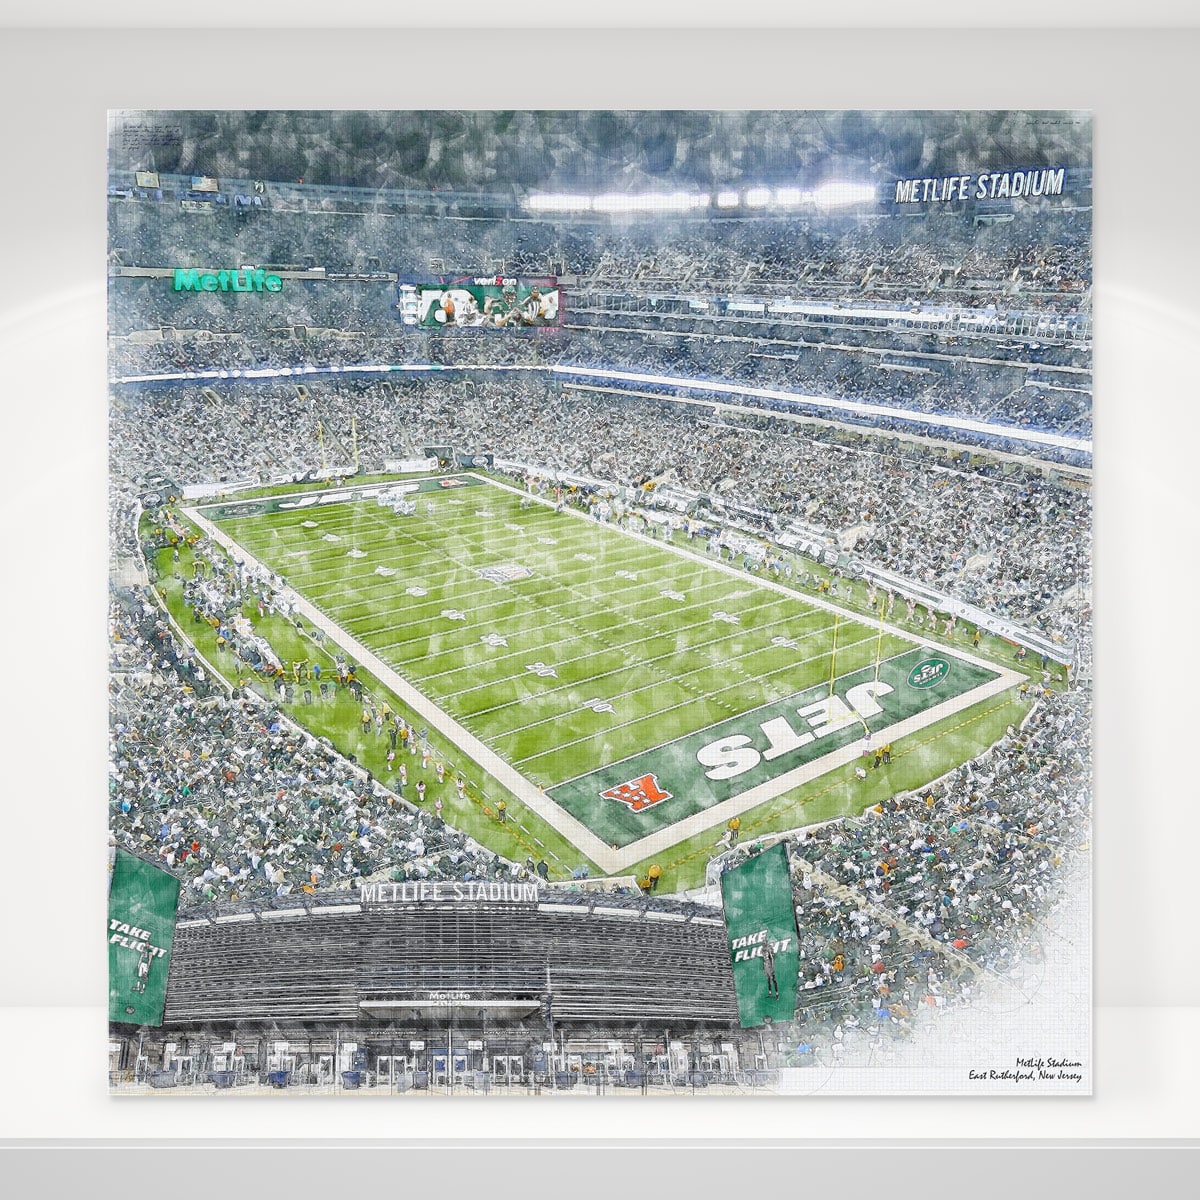 MetLife Stadium Football Stadium Print, New York Jets Football